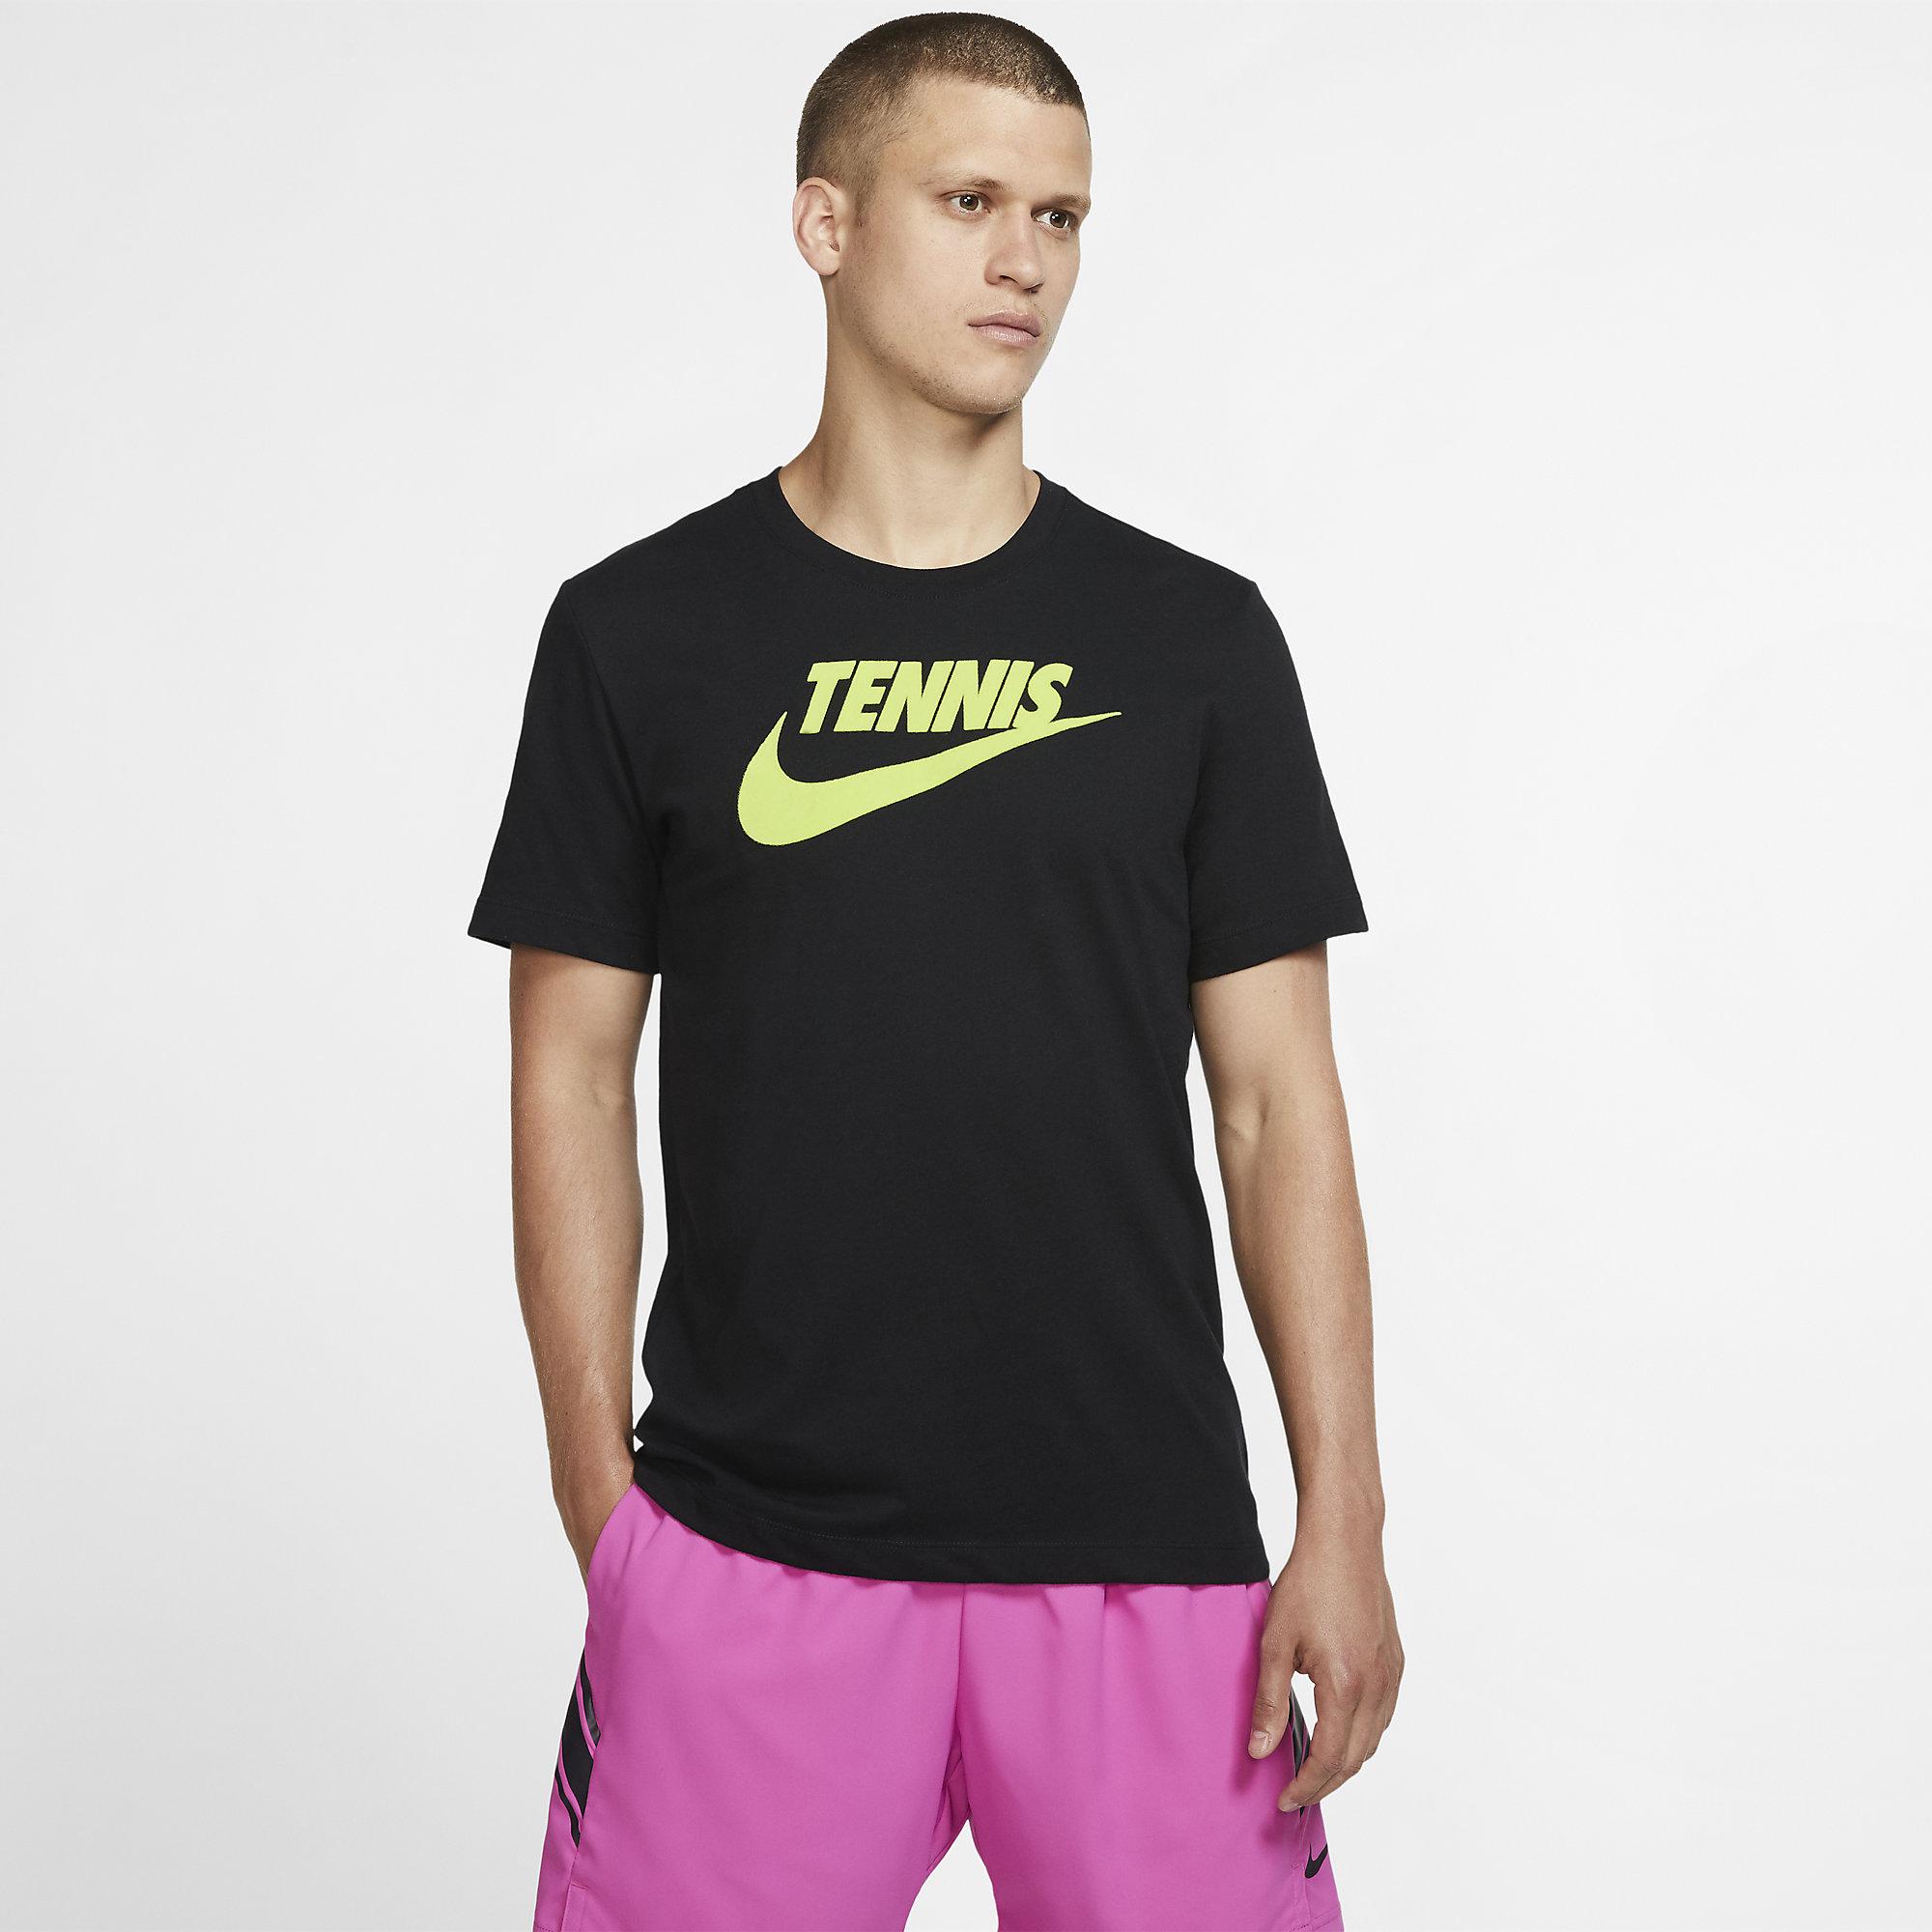 Nike Mens Dri-FIT Tennis T-Shirt - Black - Tennisnuts.com